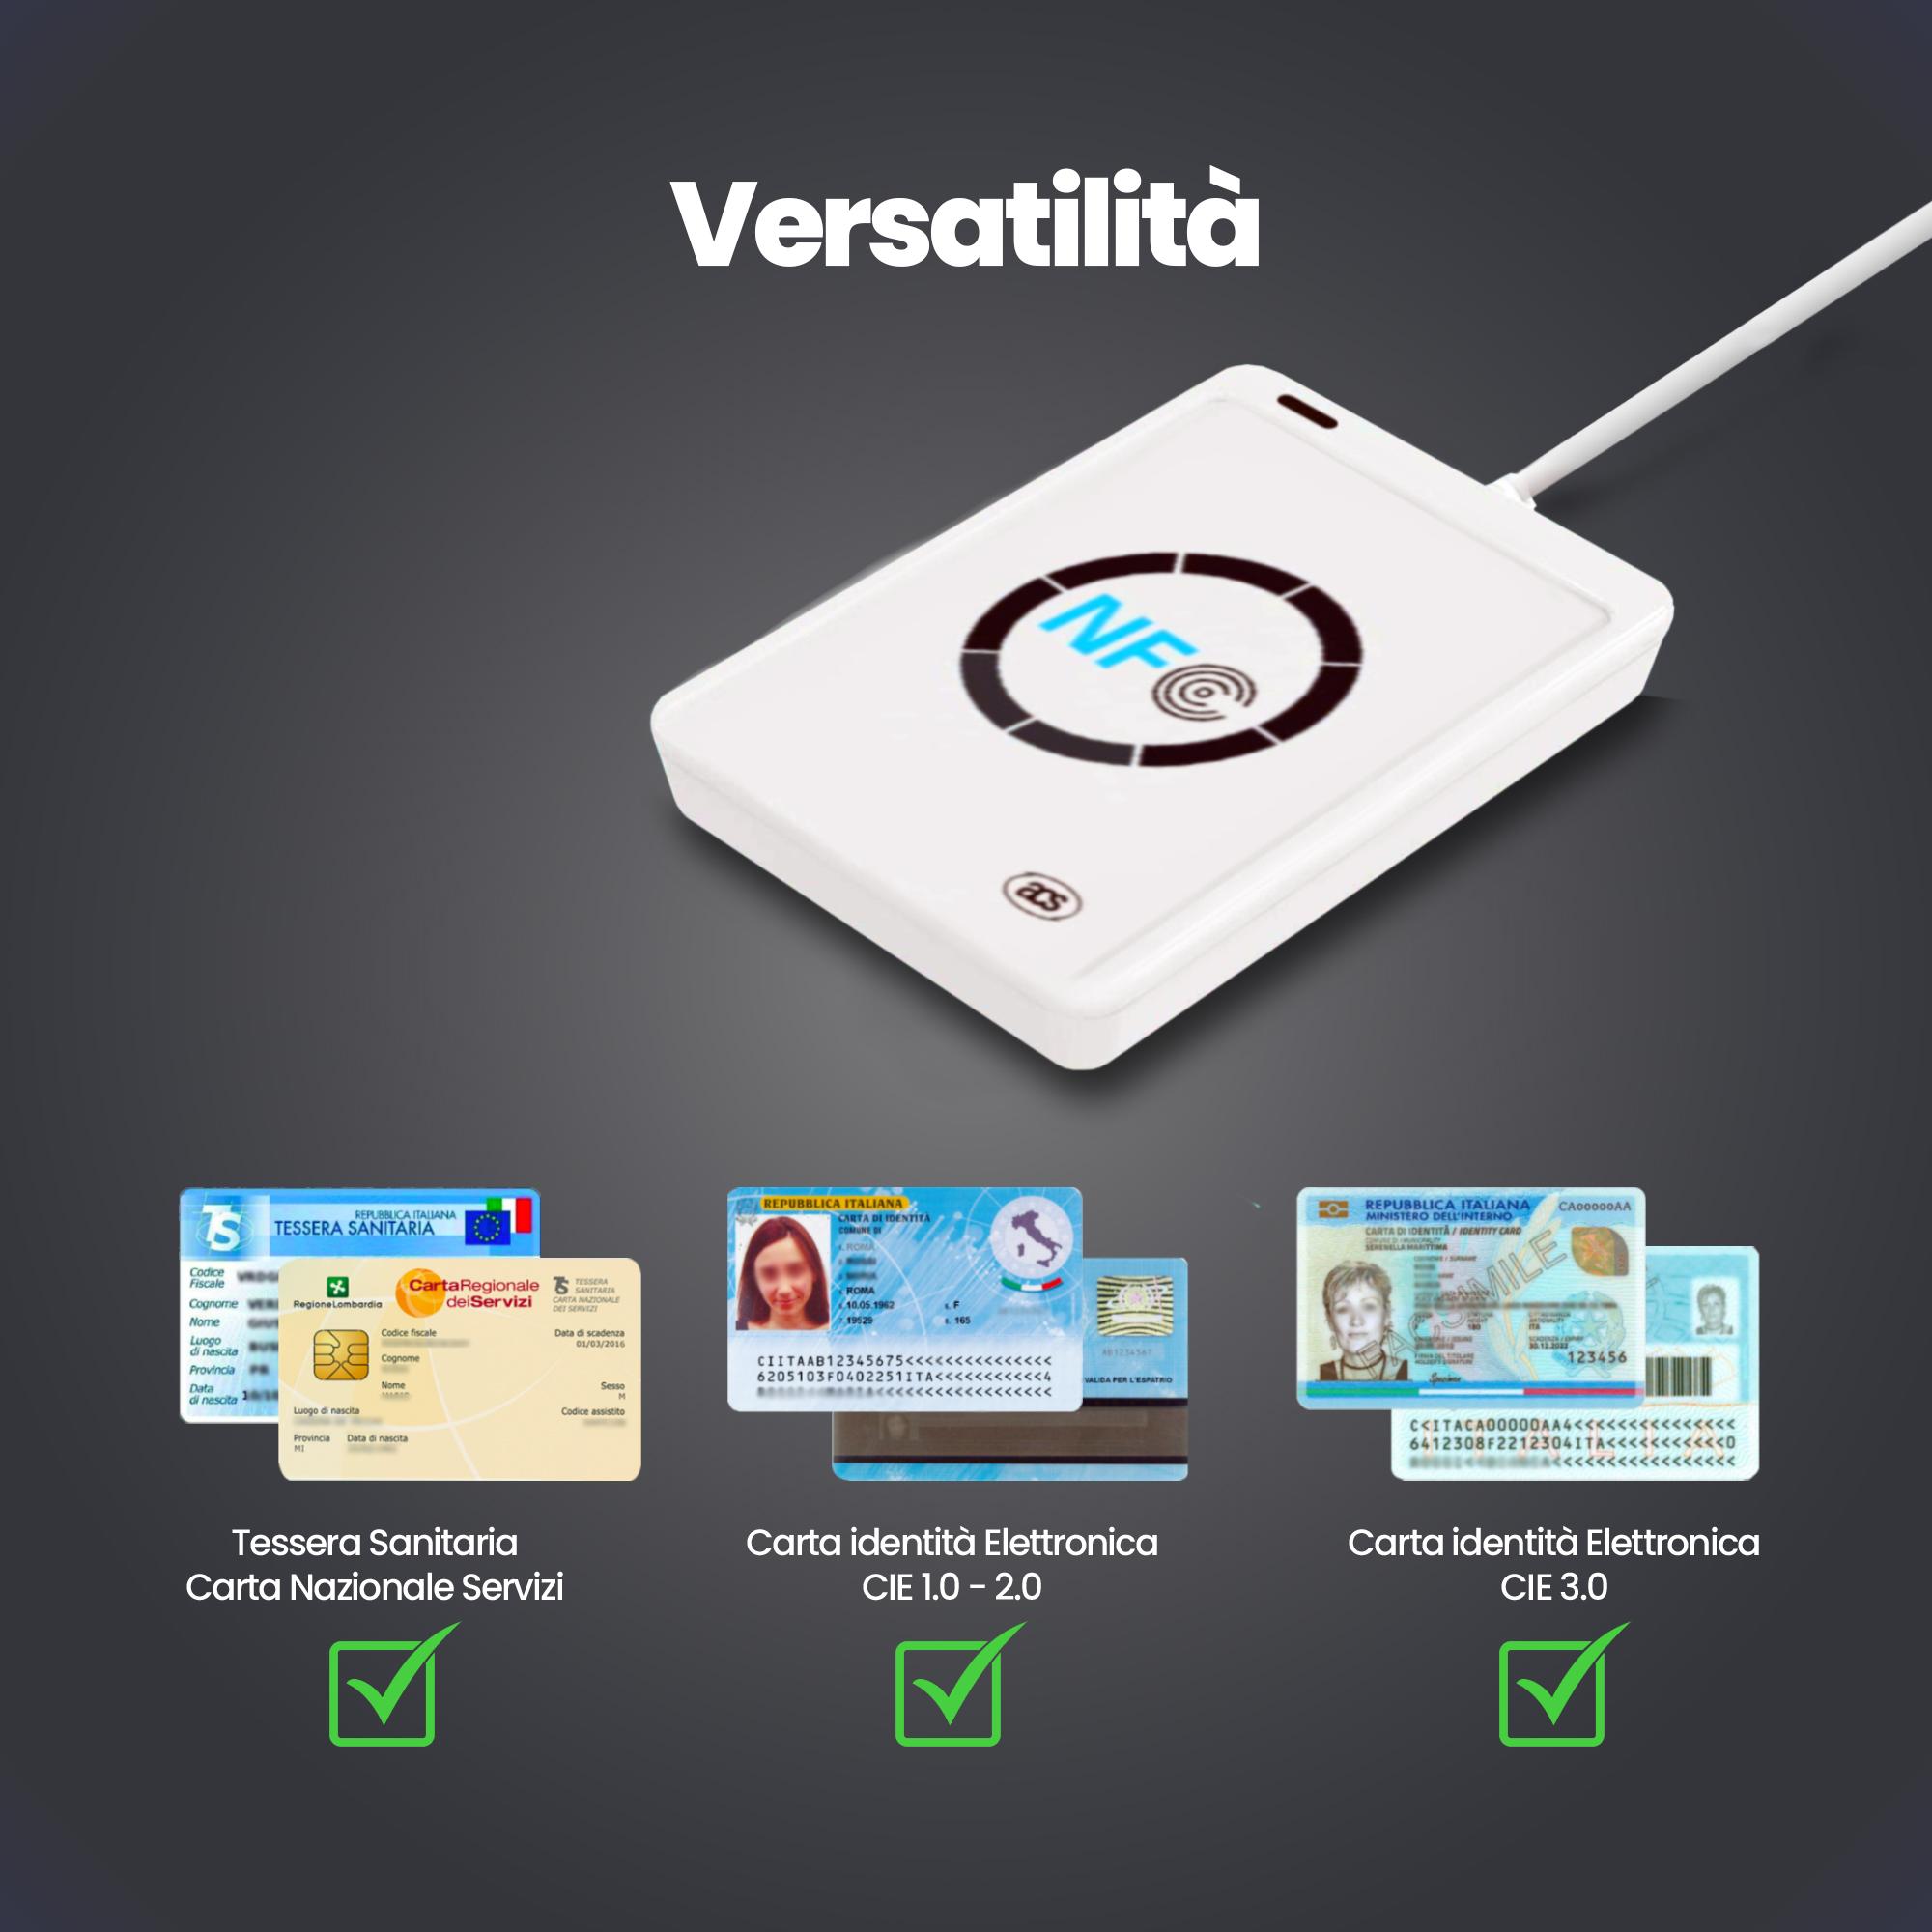 Lettore Smart Card Carta Identità Elettronica, Firma Digitale e